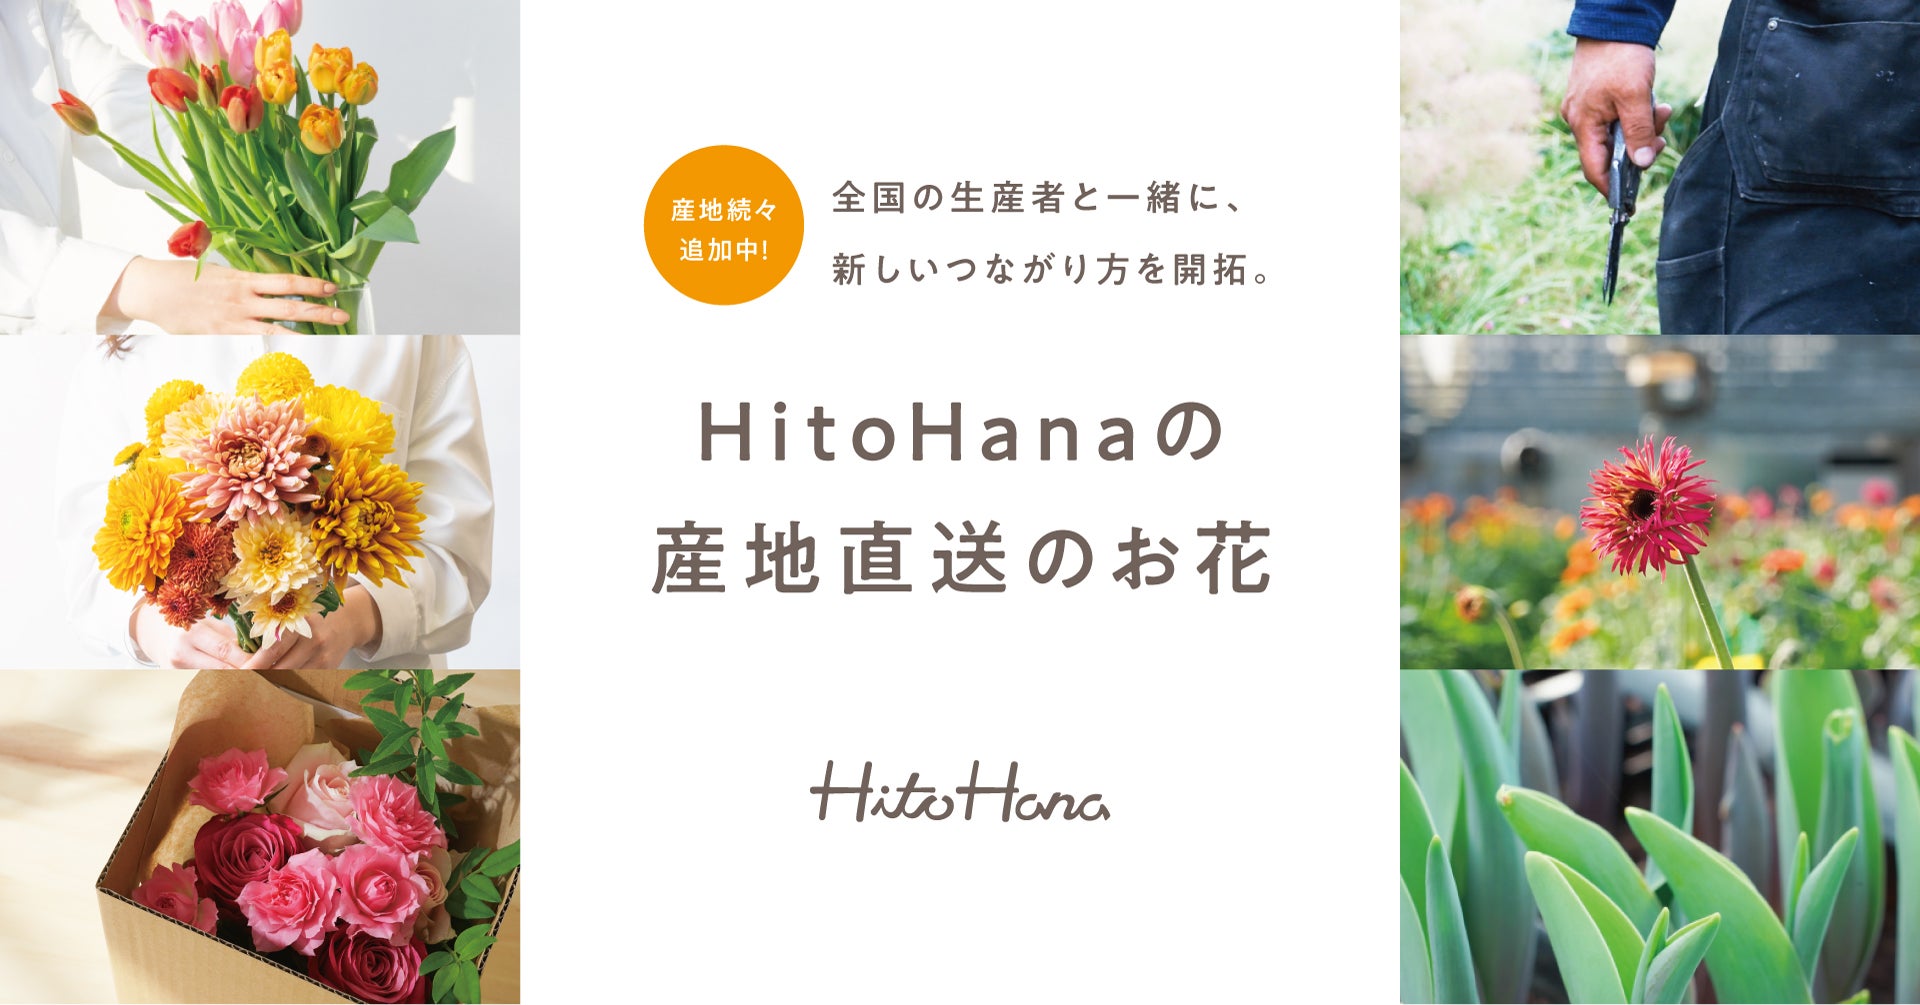 フラワーとグリーンの通販サイト「HitoHana（ひとはな）」が切り花の産地直送事業を拡大中。全国の産地と提携し、現在10拠点から季節の花をお届け（予定含む）。今後も続々と提携産地を拡大。のサブ画像1_HitoHana 産地直送のお花